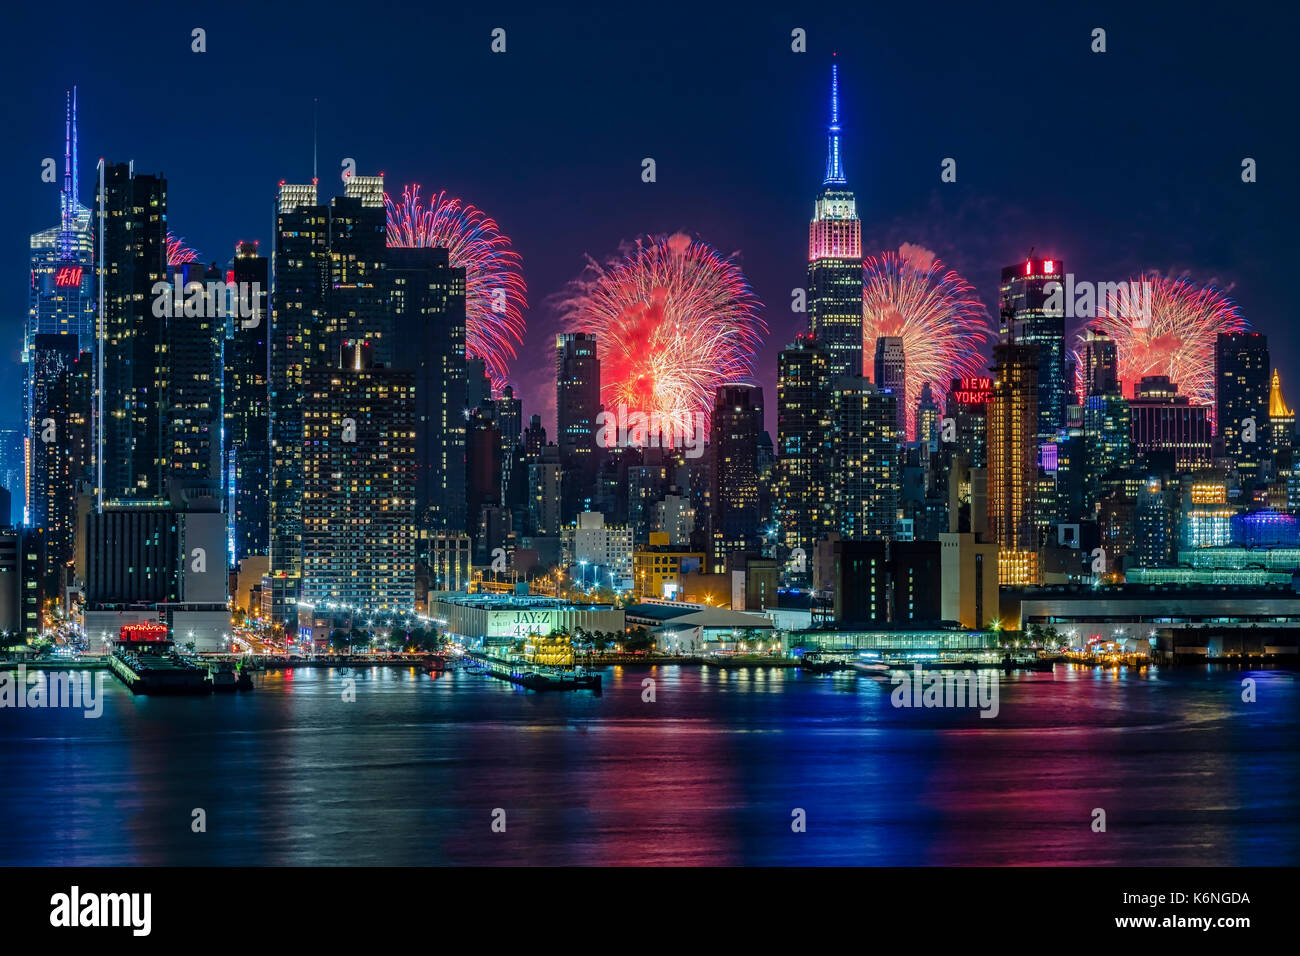 NYC Feuerwerk Feier - Skyline von New York City mit dem Macy's Spektakuläre 4. Juli Feuerwerk Feier zeigen als Kulisse für Midtown Manhattan. Stockfoto